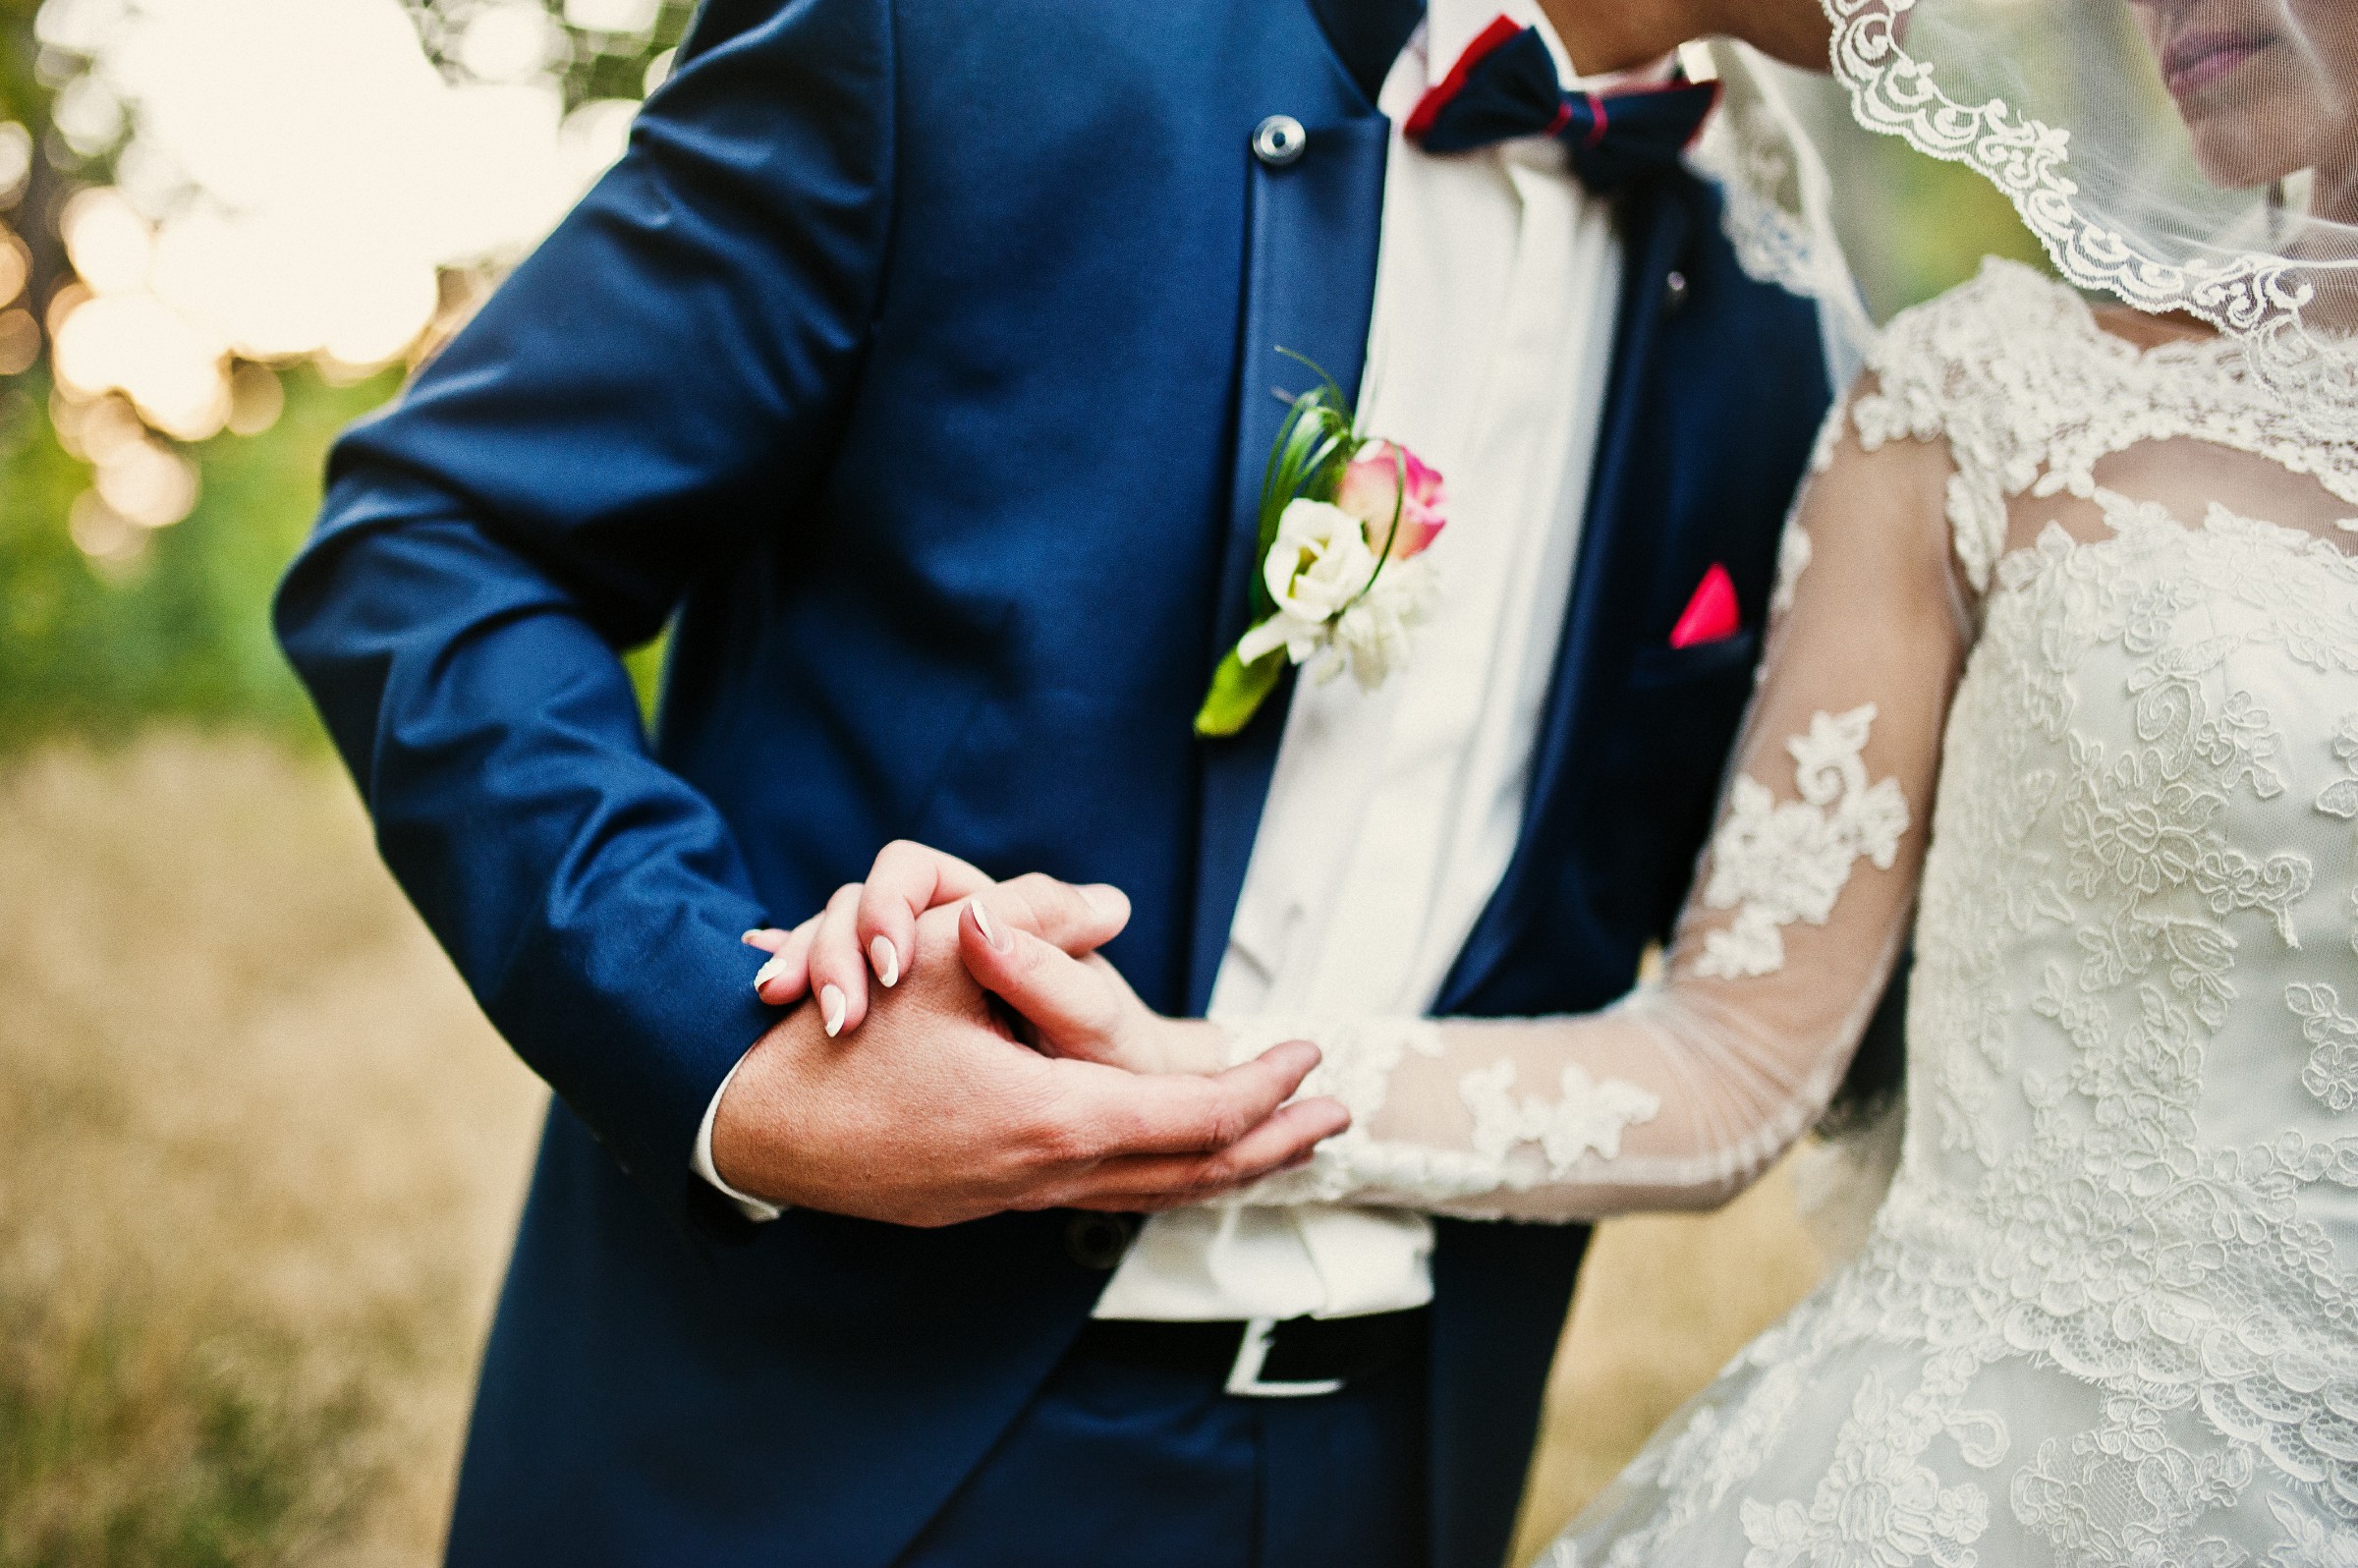 FormatFactoryhand-in-hand-of-stylish-wedding-couple-2022-01-26-16-24-07-utc